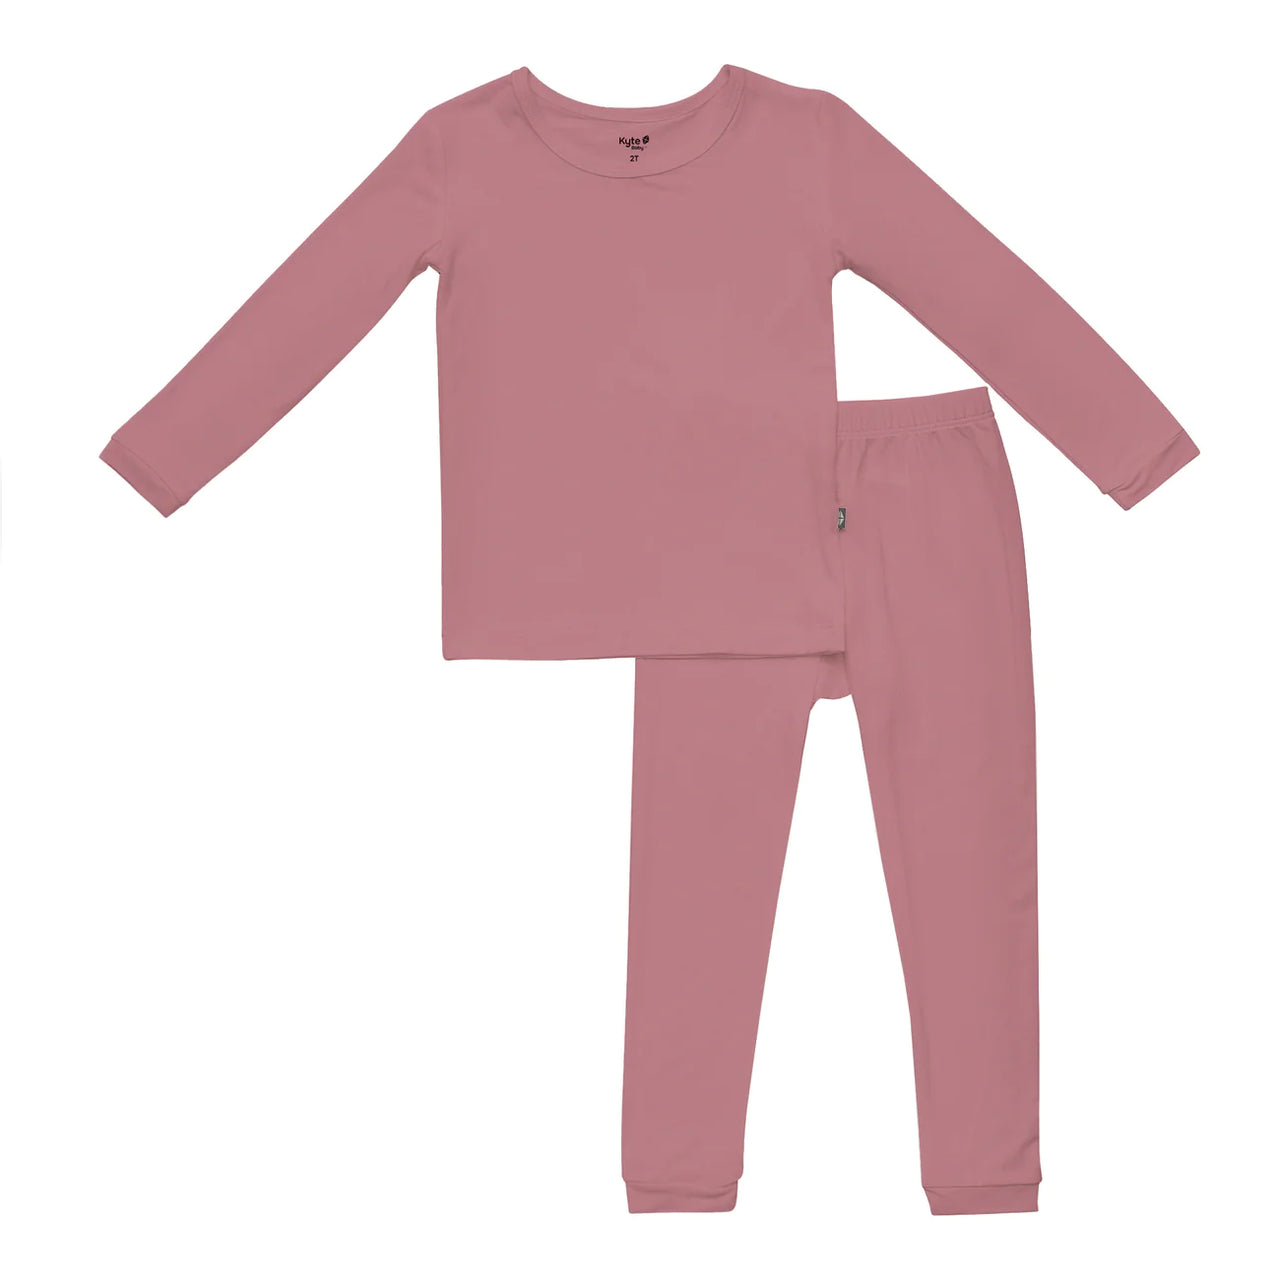 Toddler Pajama Set- Dusty Rose